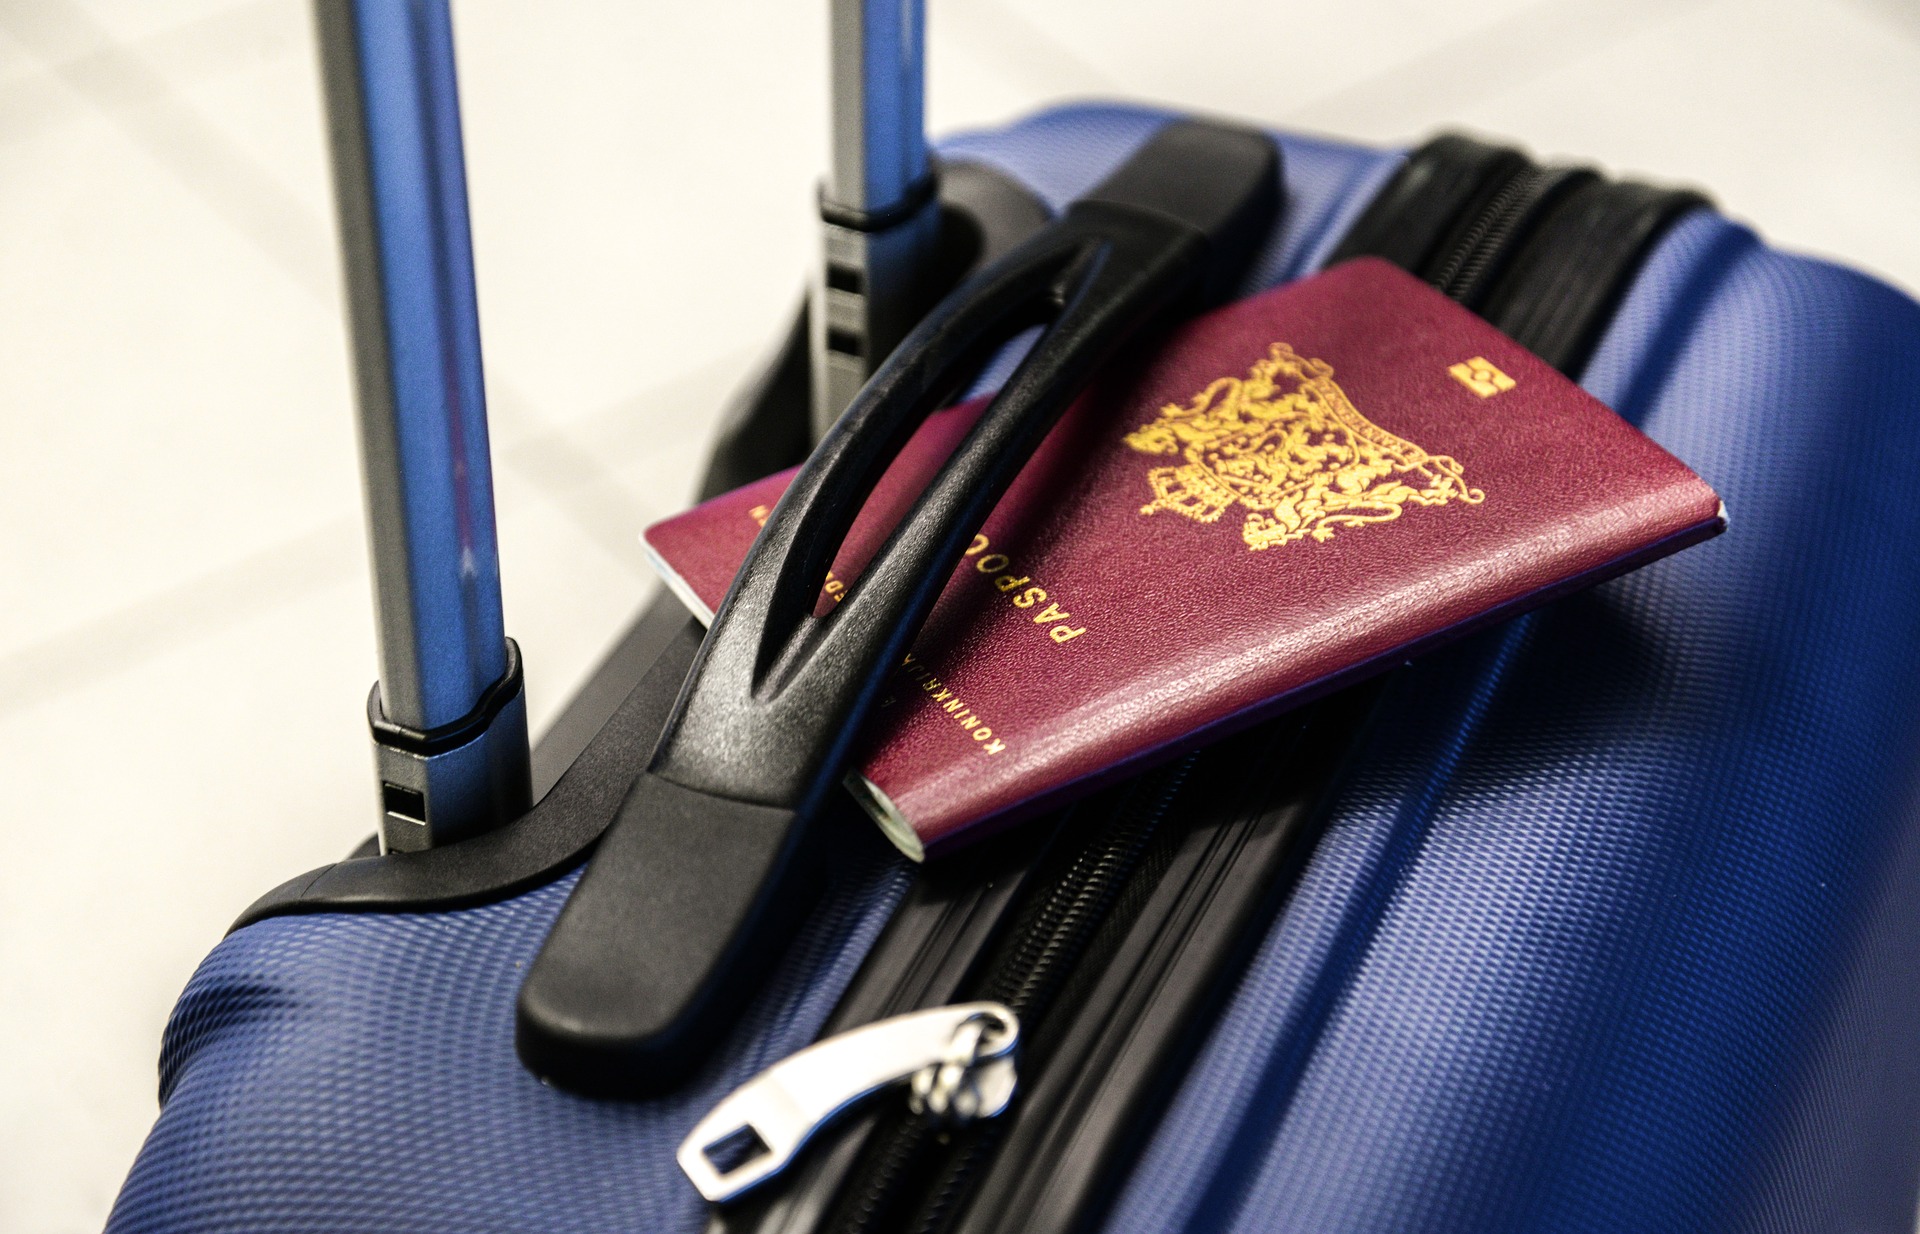 Passaporte, visto, grenn card e cidadania americana, entenda diferença. Foto: Pixabay